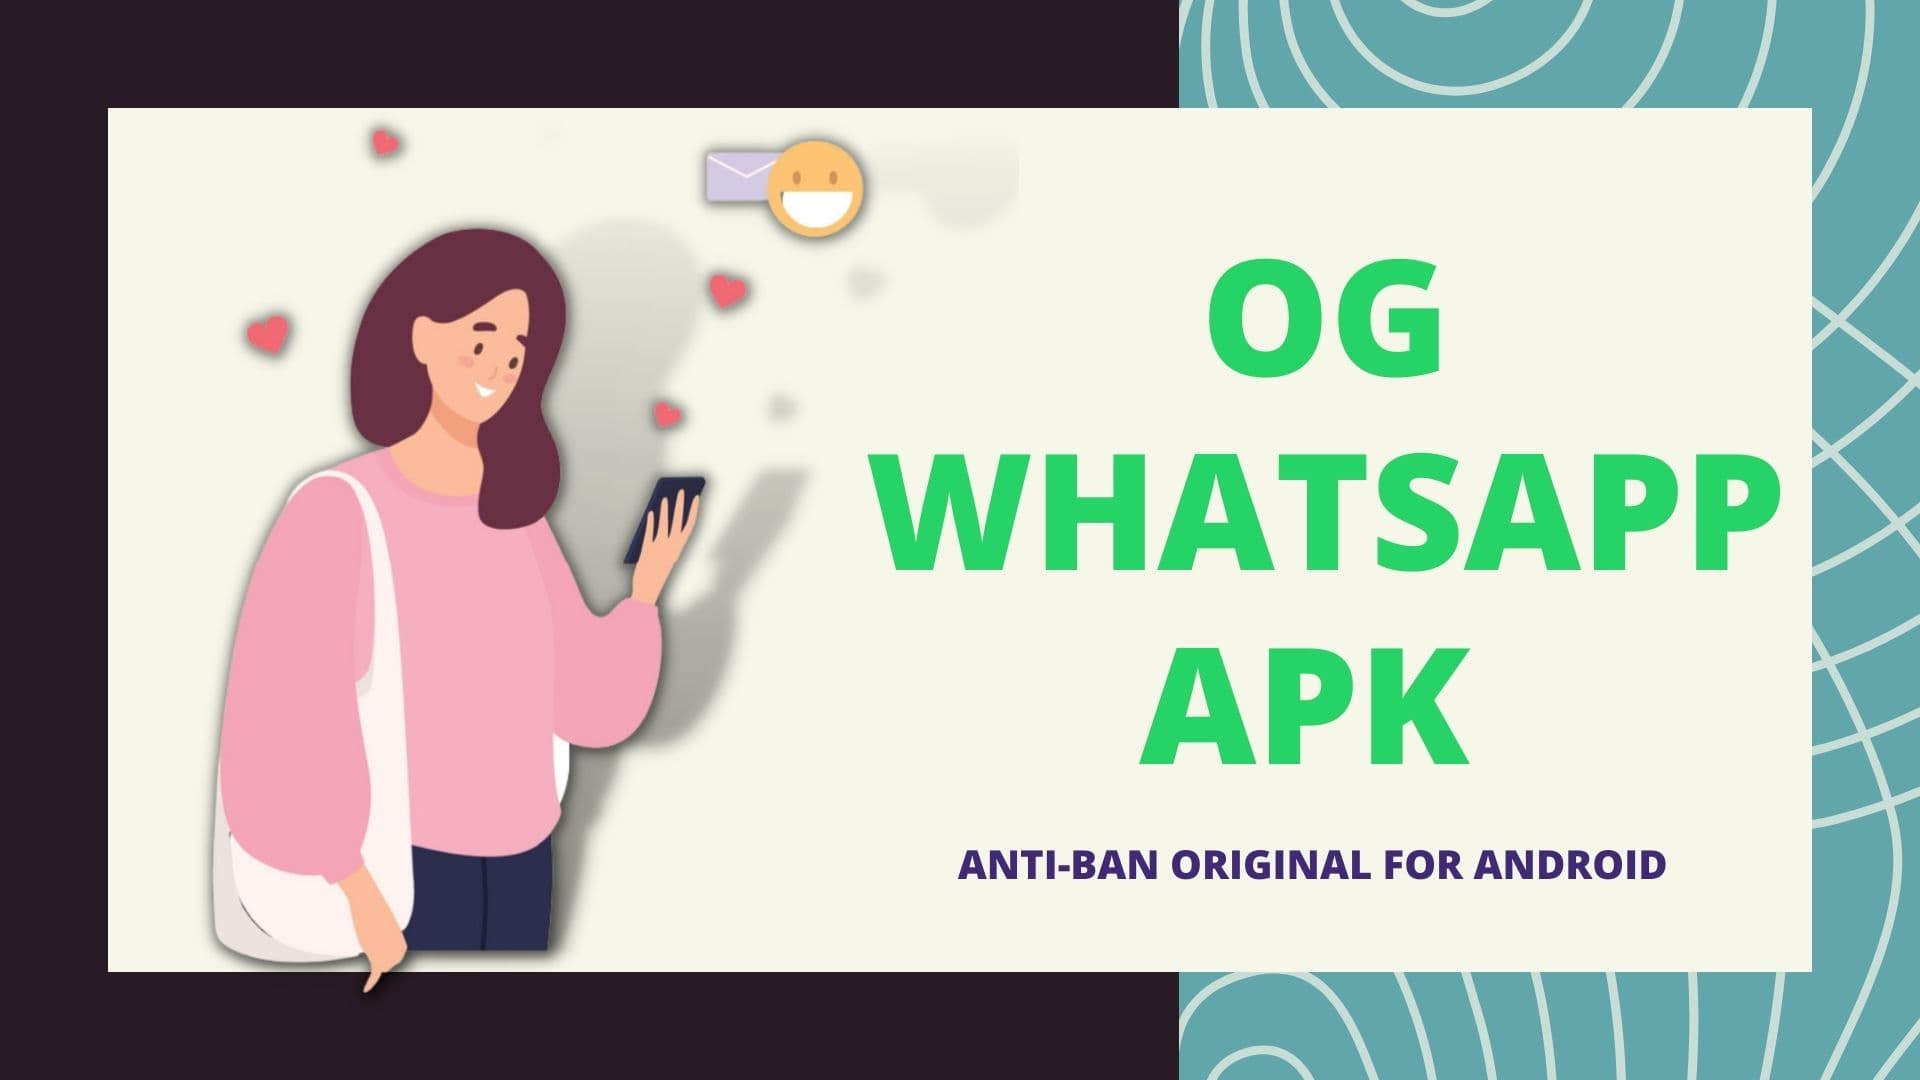 OG WhatsApp APK